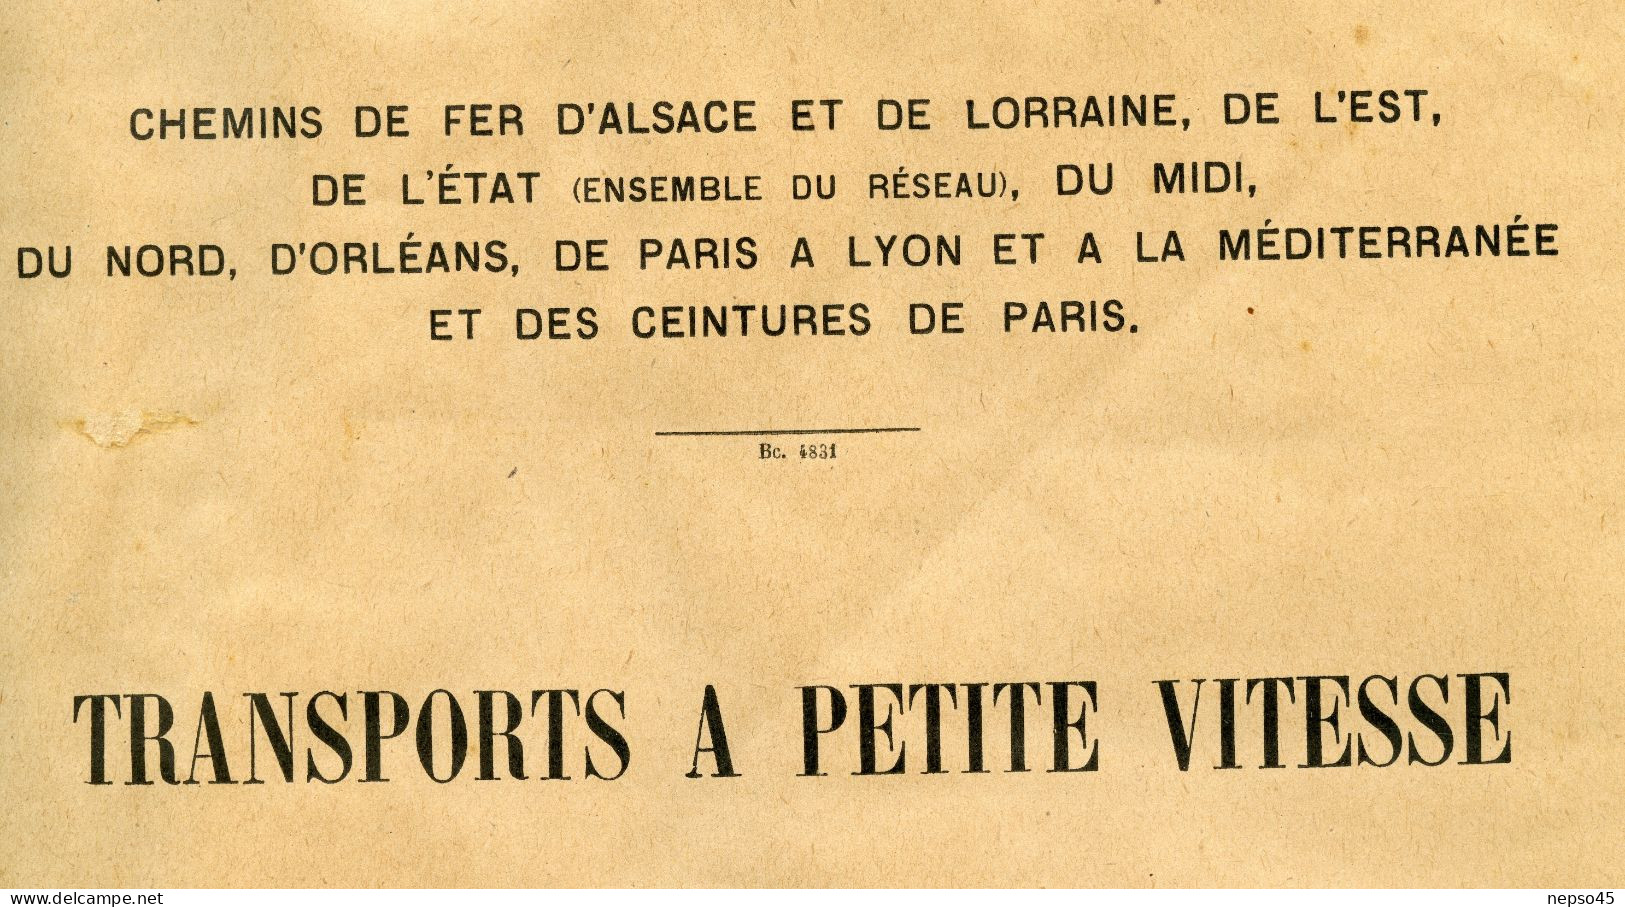 Instructions Générales.1926.Transport à Petite Vitesse.Chemins De Fer.Alsace-Lorraine.de L'Est.d'Etat.du Midi.du No - Railway